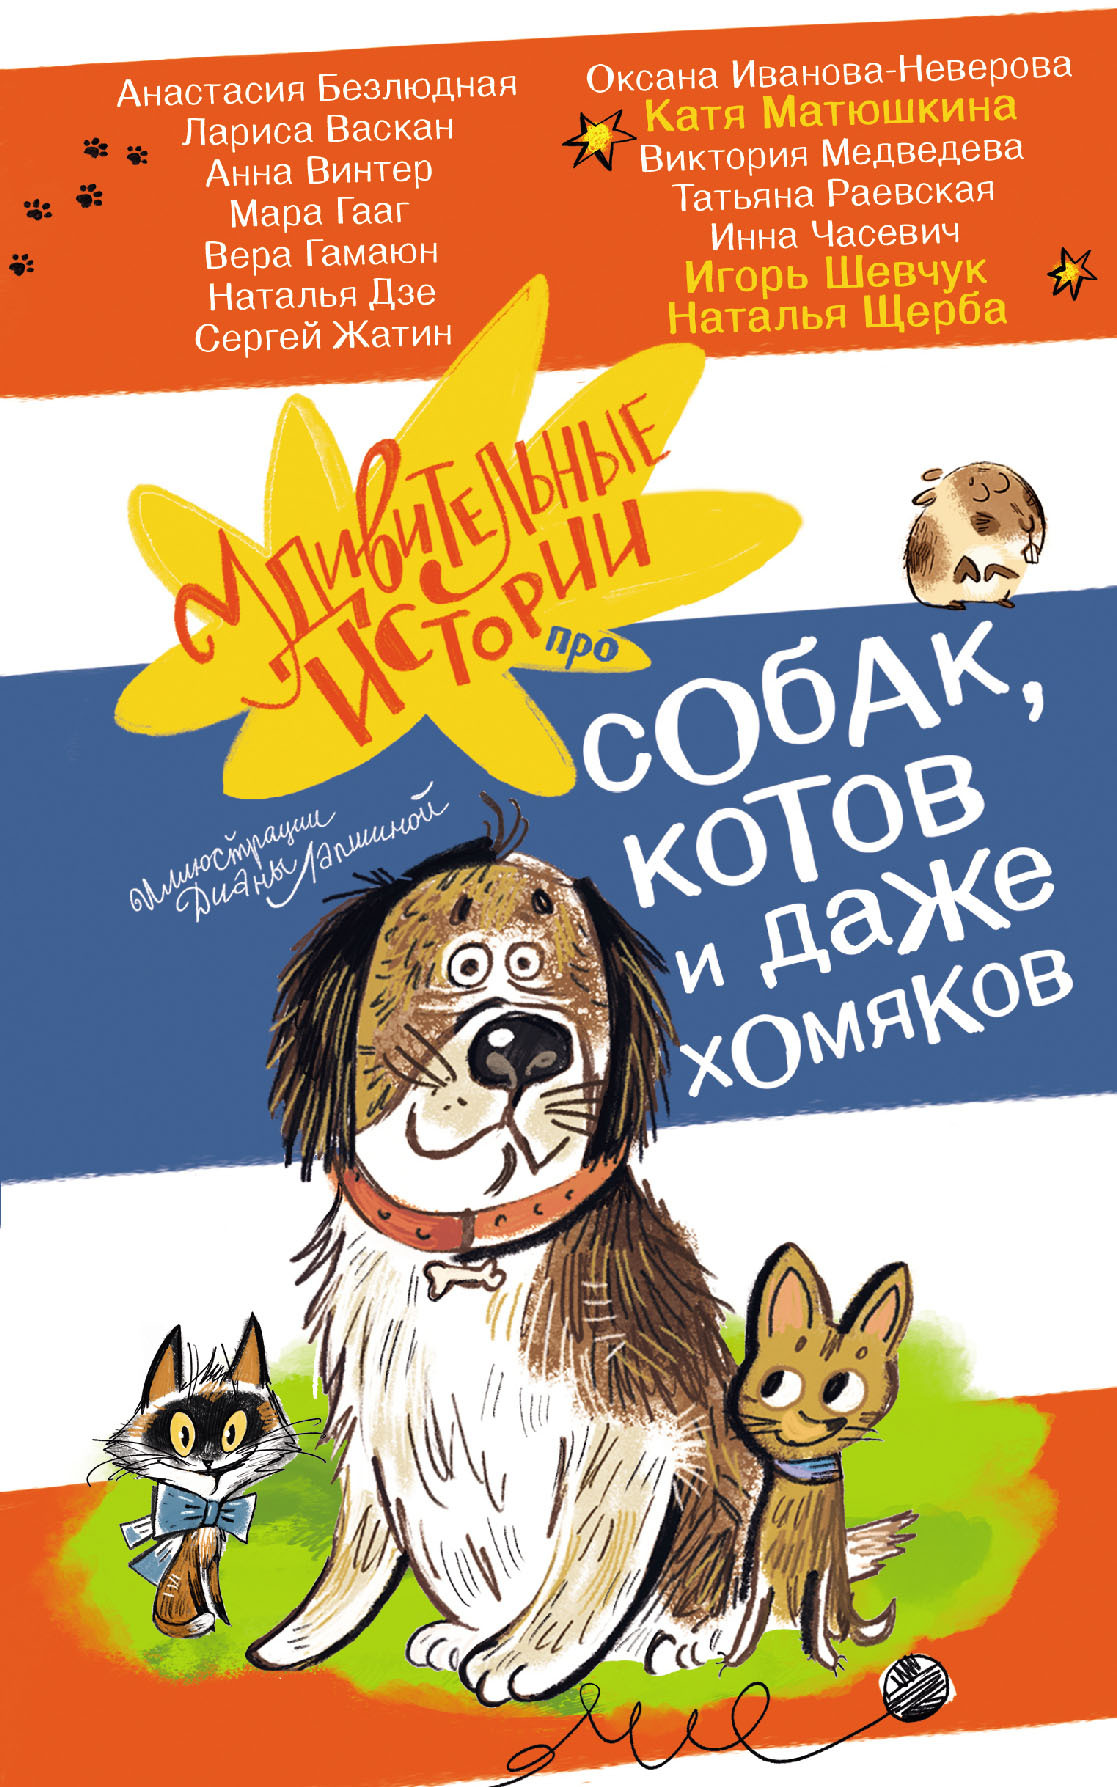 Удивительные истории про собак, котов и даже хомяков - Наталья Васильевна Щерба